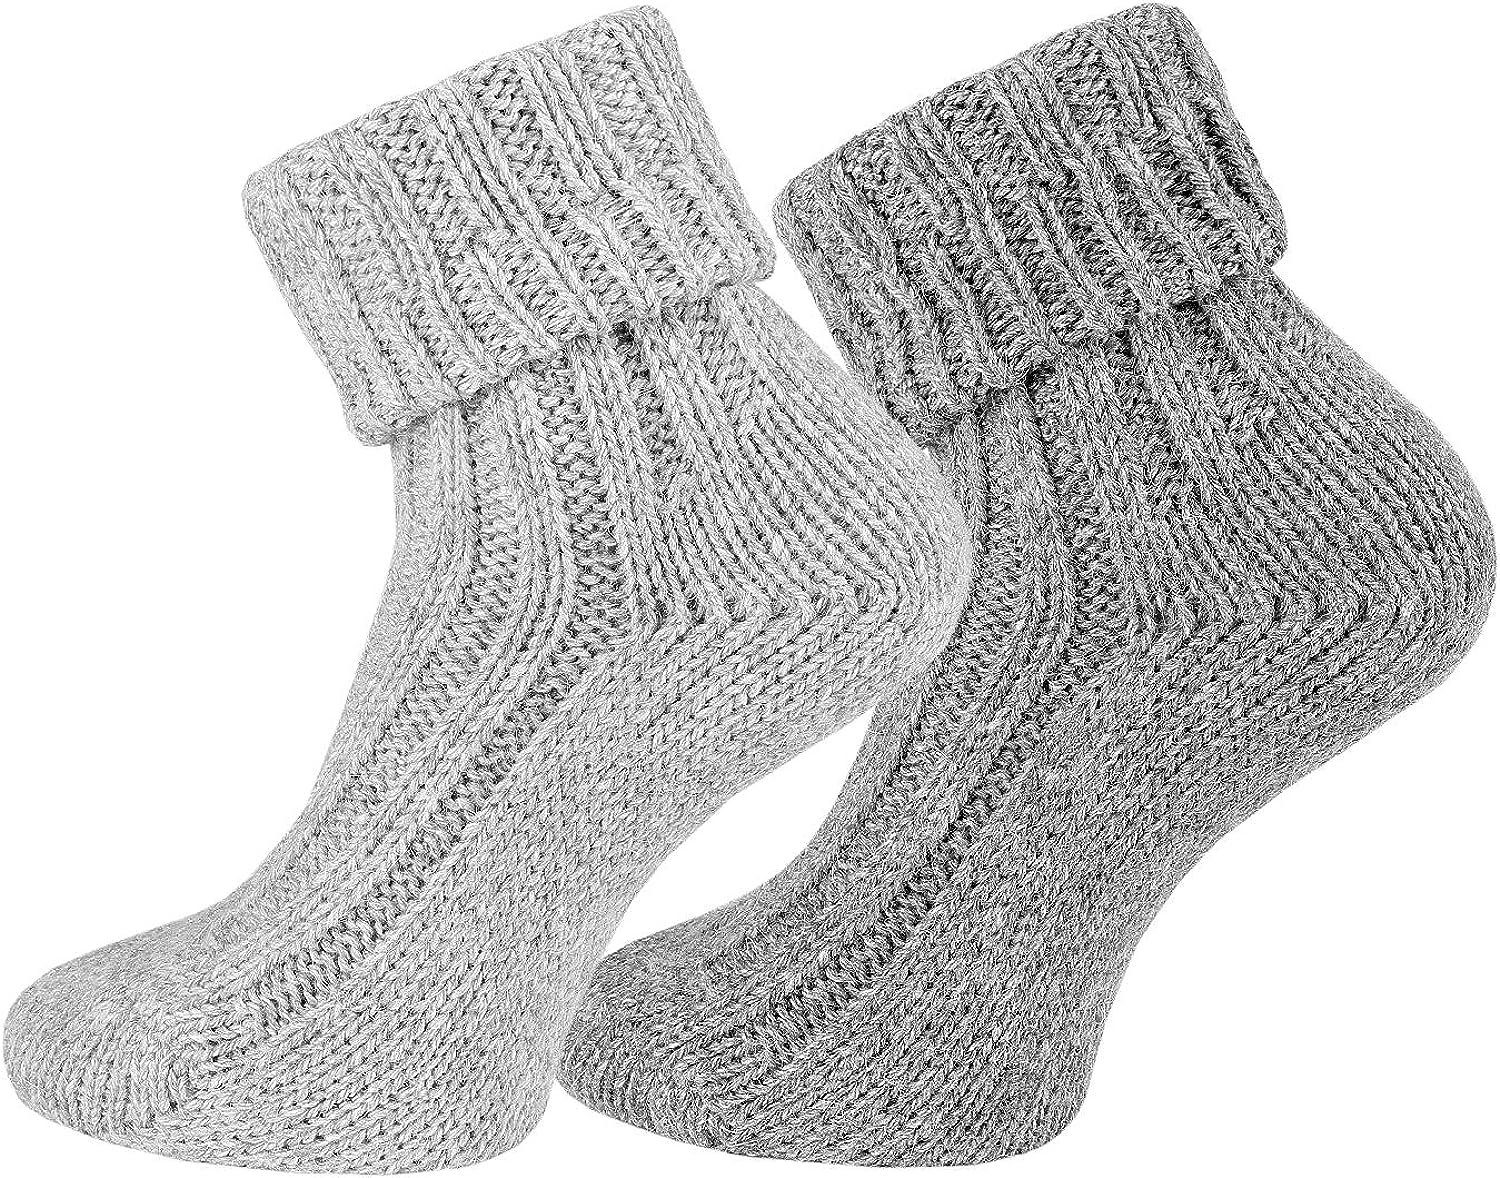 Umschlag-Socken Wollsocken mit Alpakawolle, TippTexx 2 superweiche Paar Kuschel Umschlagsocken 24 Hellgrau-Grau